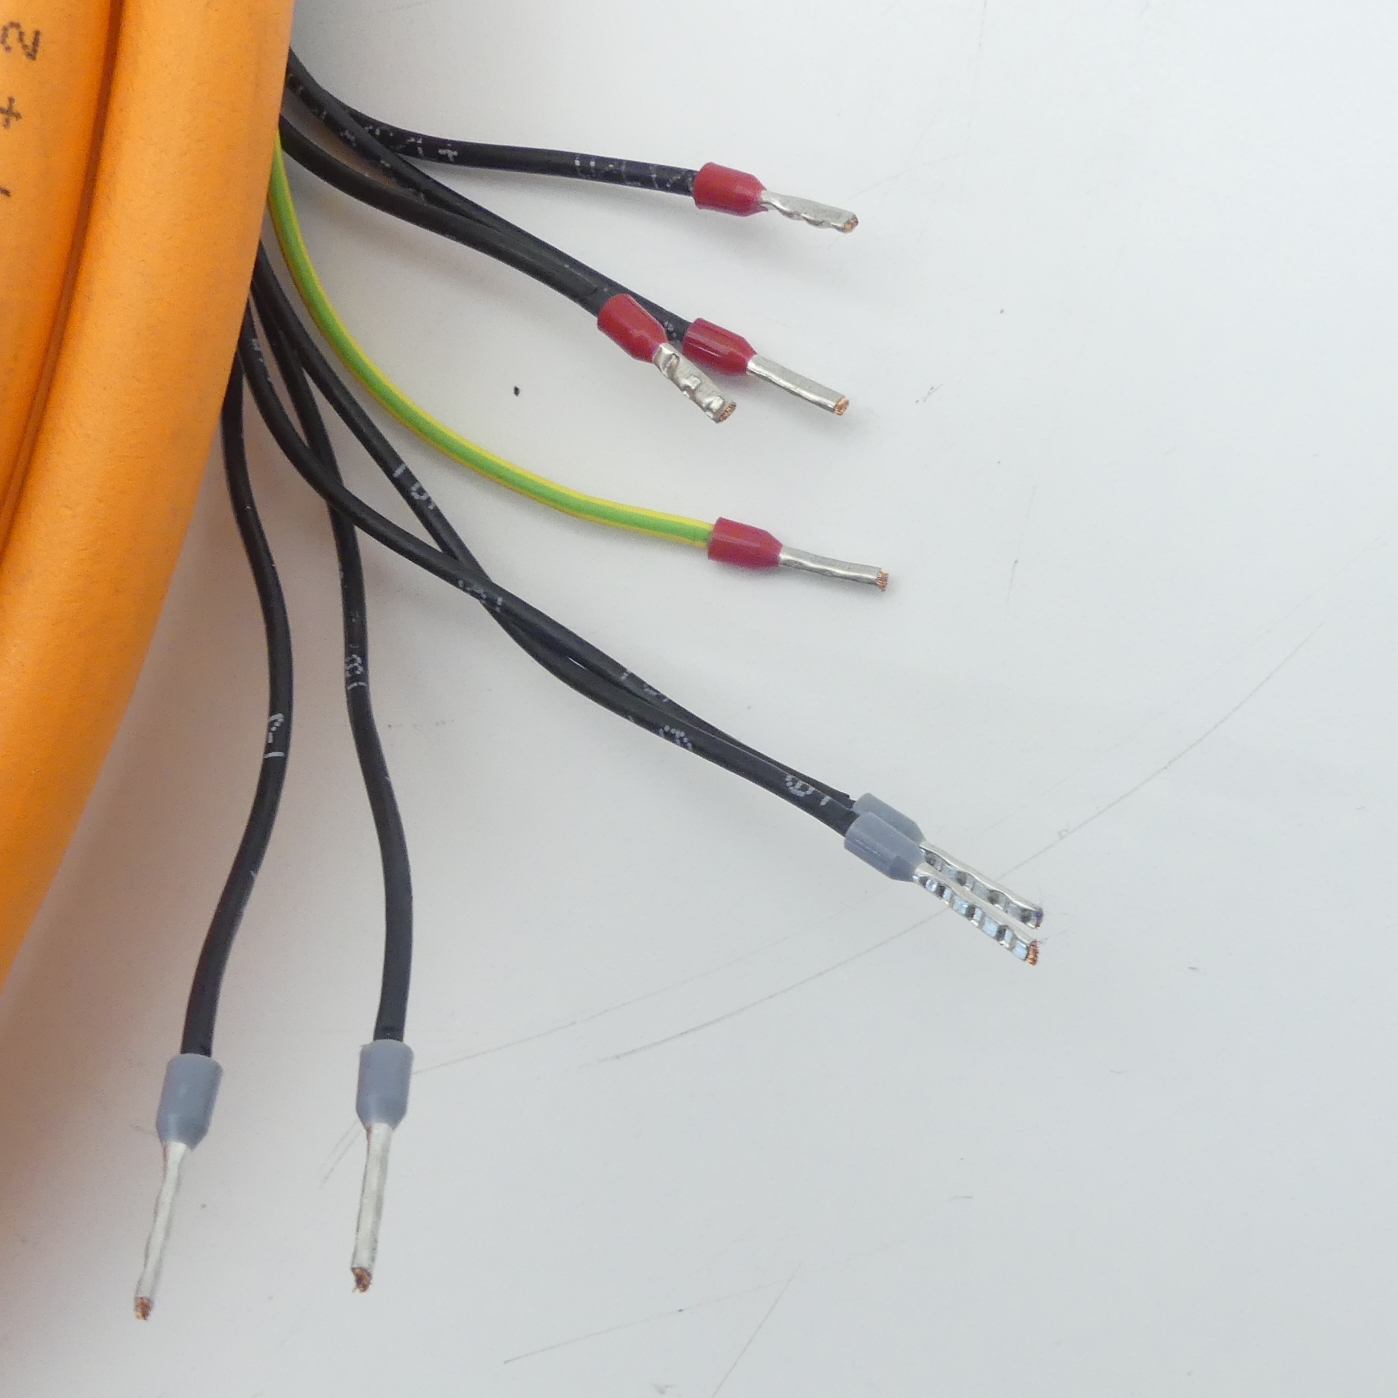 Kabel für Servoantriebe 